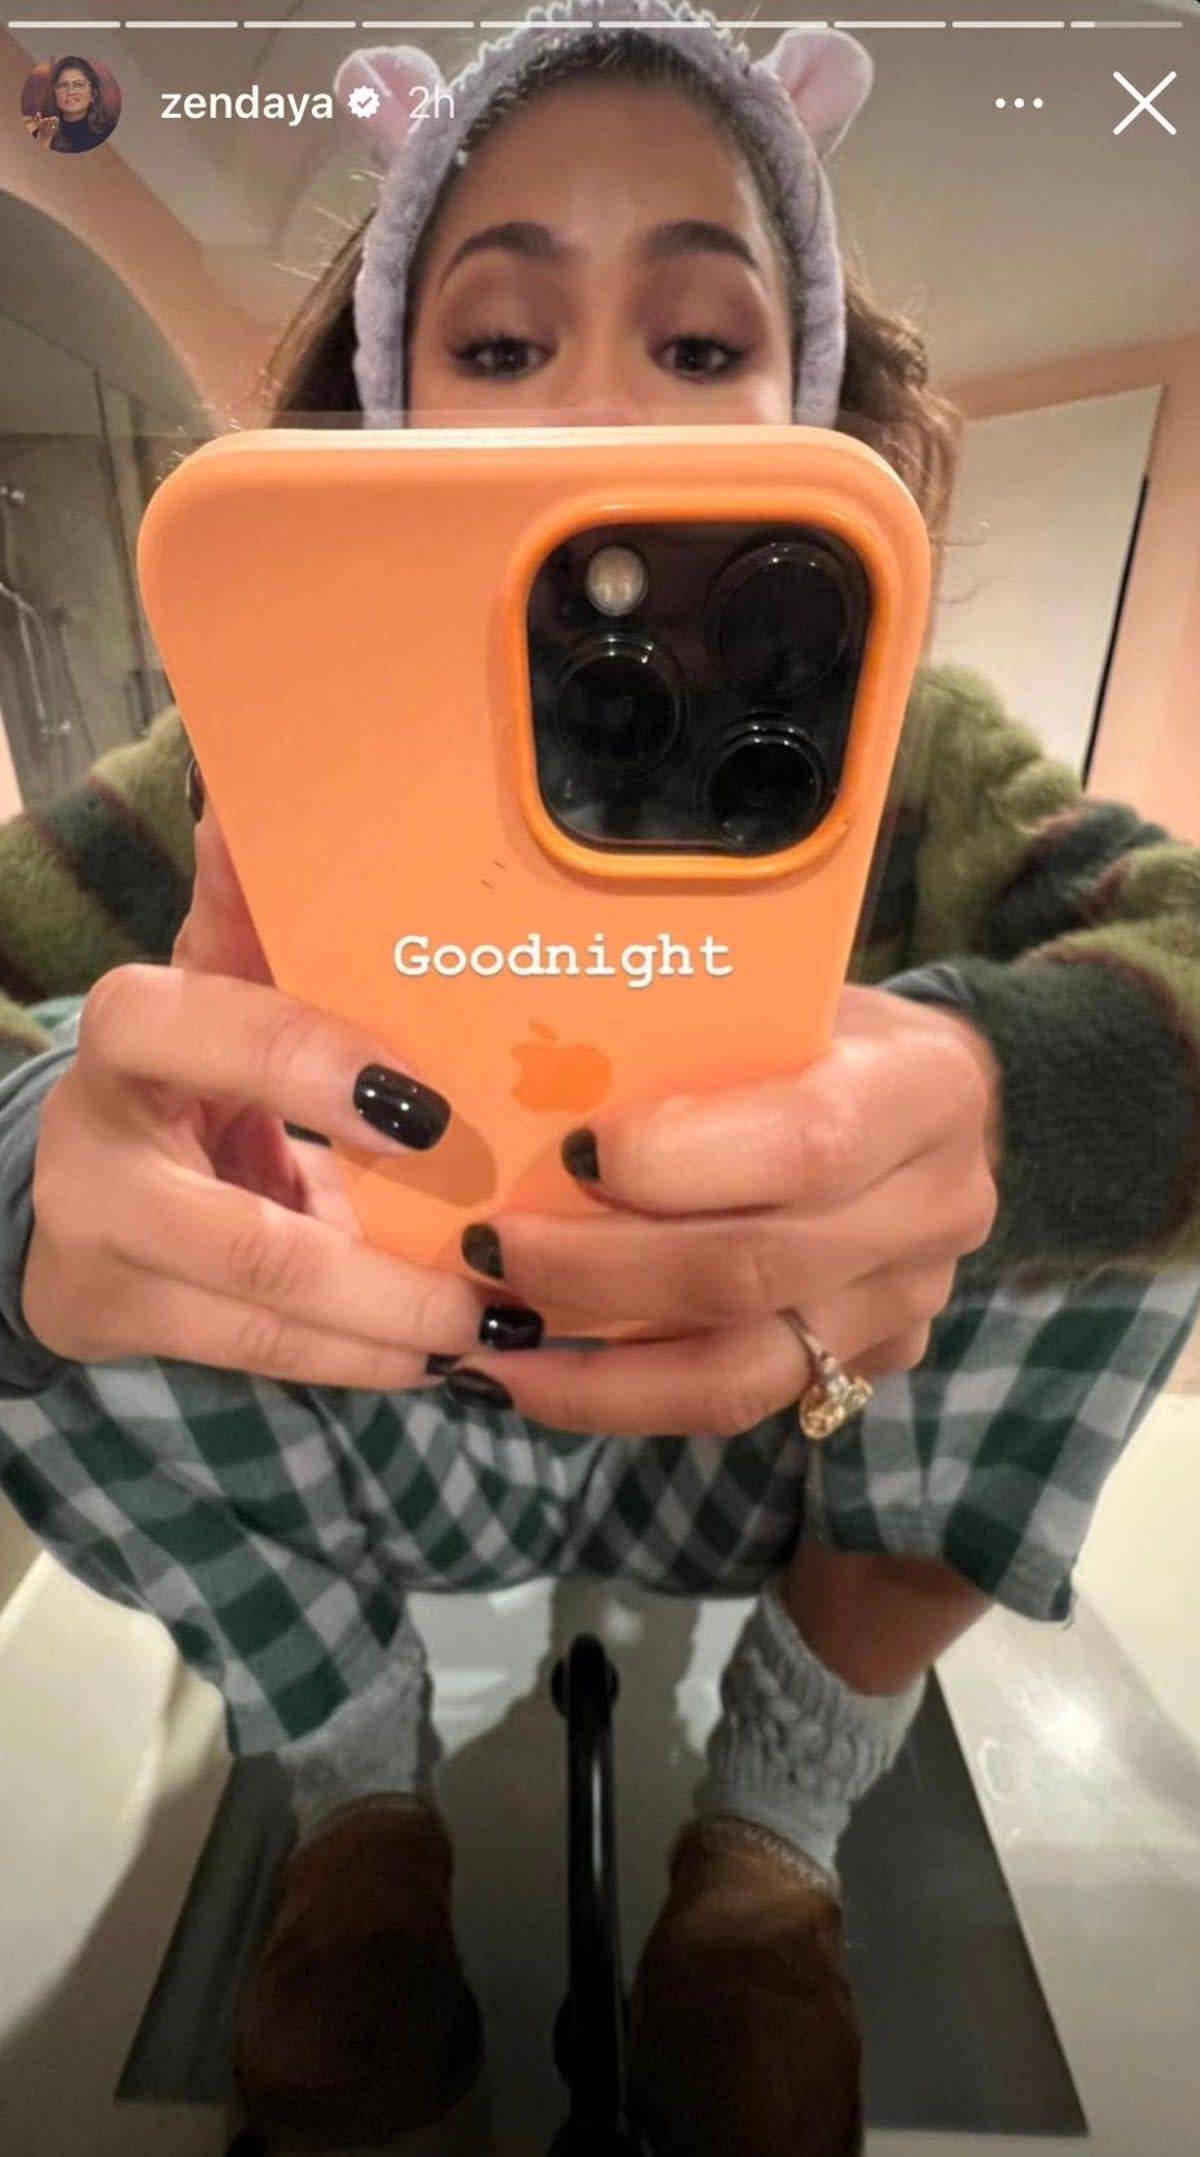 Zendaya shows off her massive diamond ring on her Instagram story (Instagram / Zendaya)